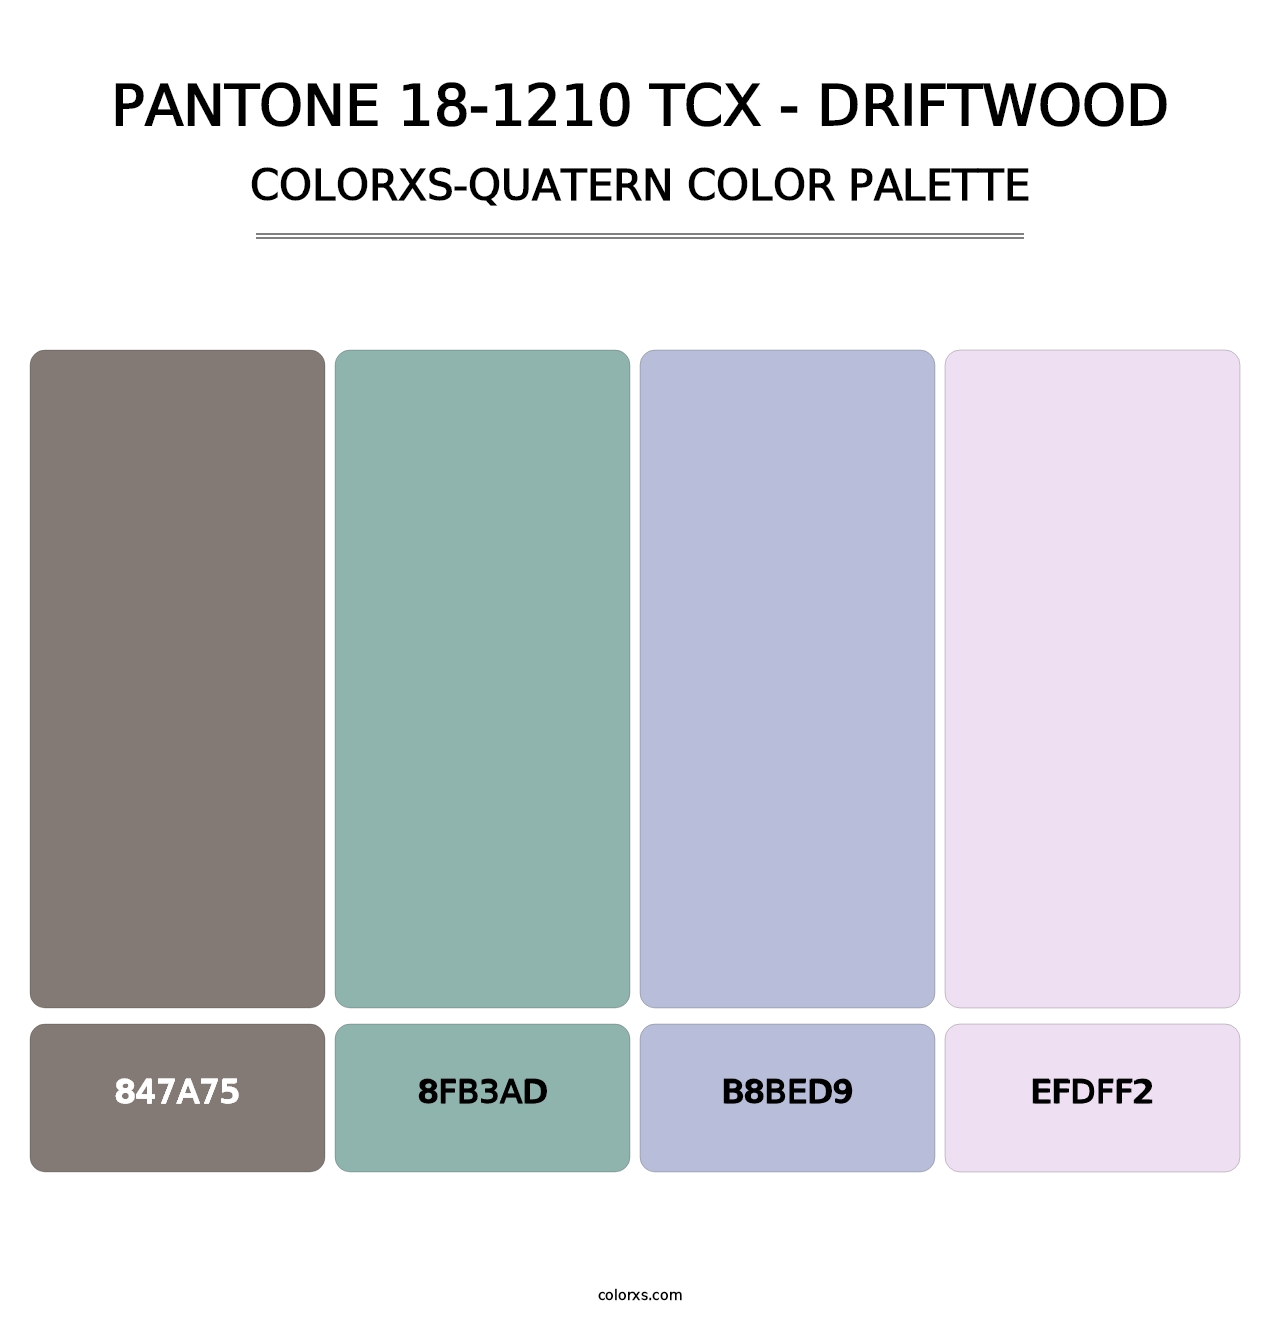 PANTONE 18-1210 TCX - Driftwood - Colorxs Quatern Palette